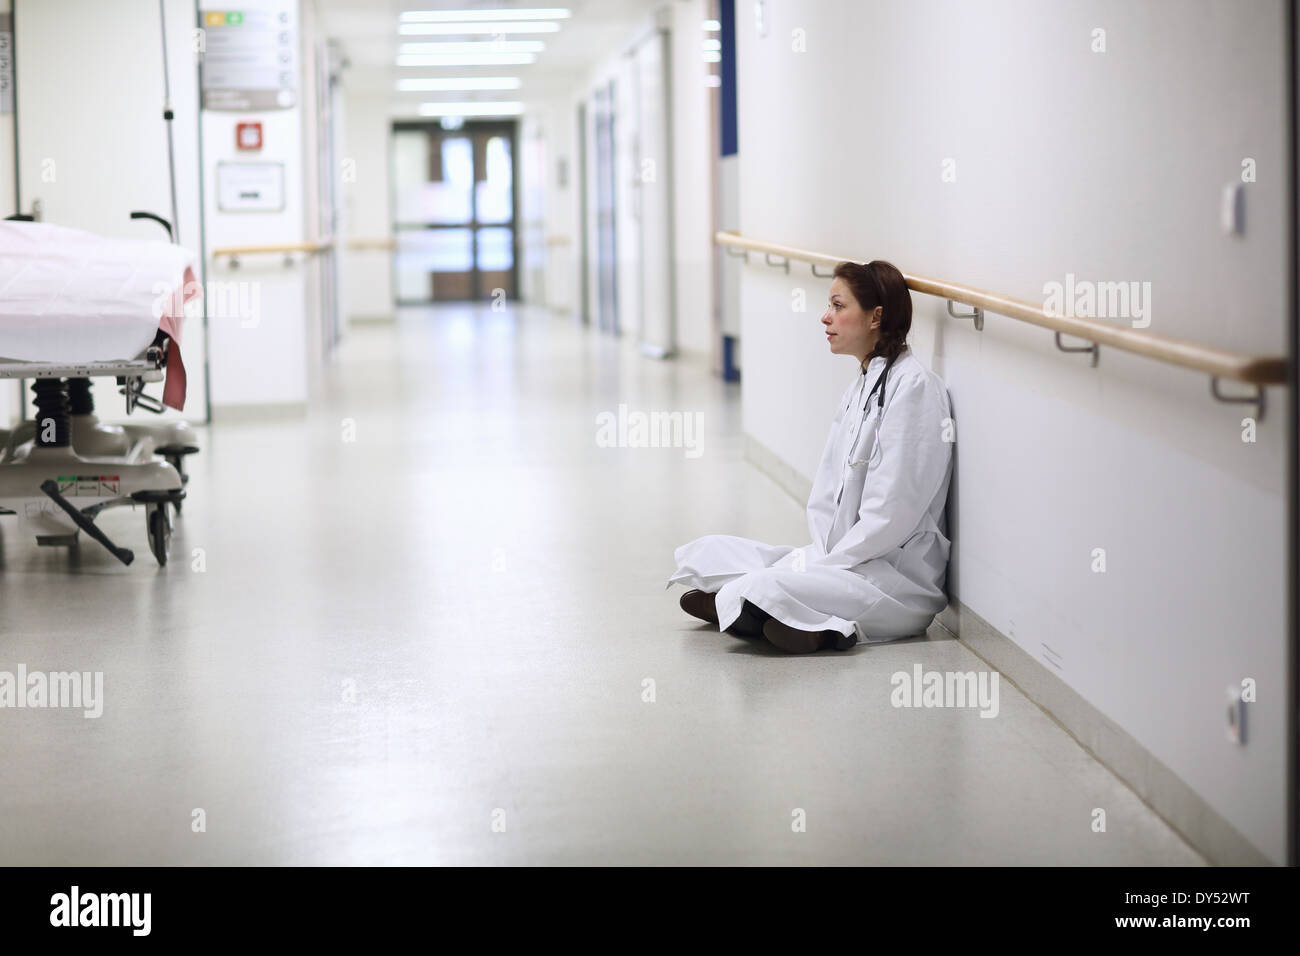 Female doctor sitting cross legged in hospital corridor Stock Photo